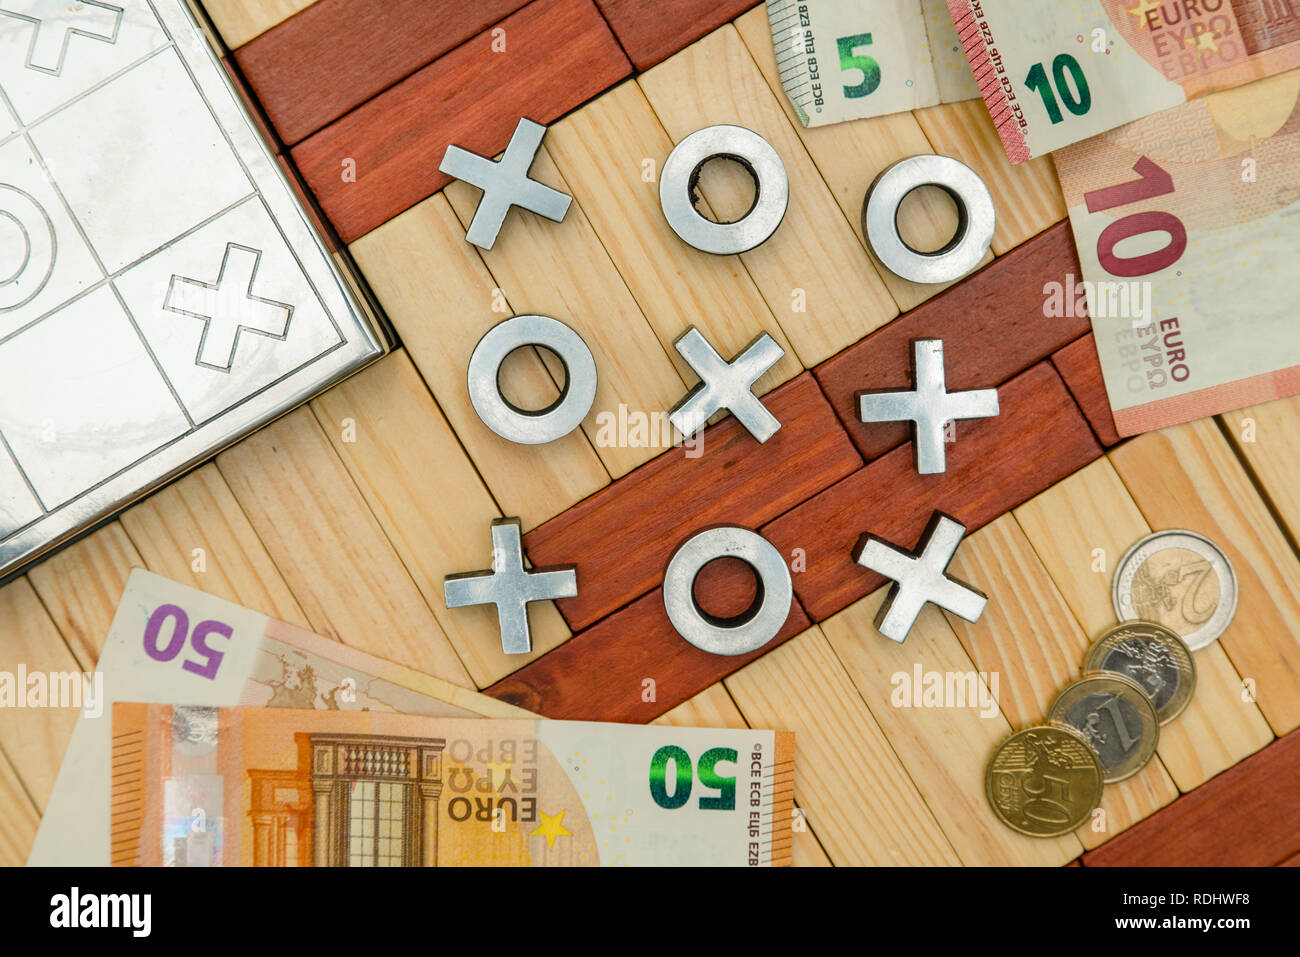 Spielen für Geld, Kreuz und null Spiel, Euro Münzen, Banknoten, Geld spiele  Stockfotografie - Alamy